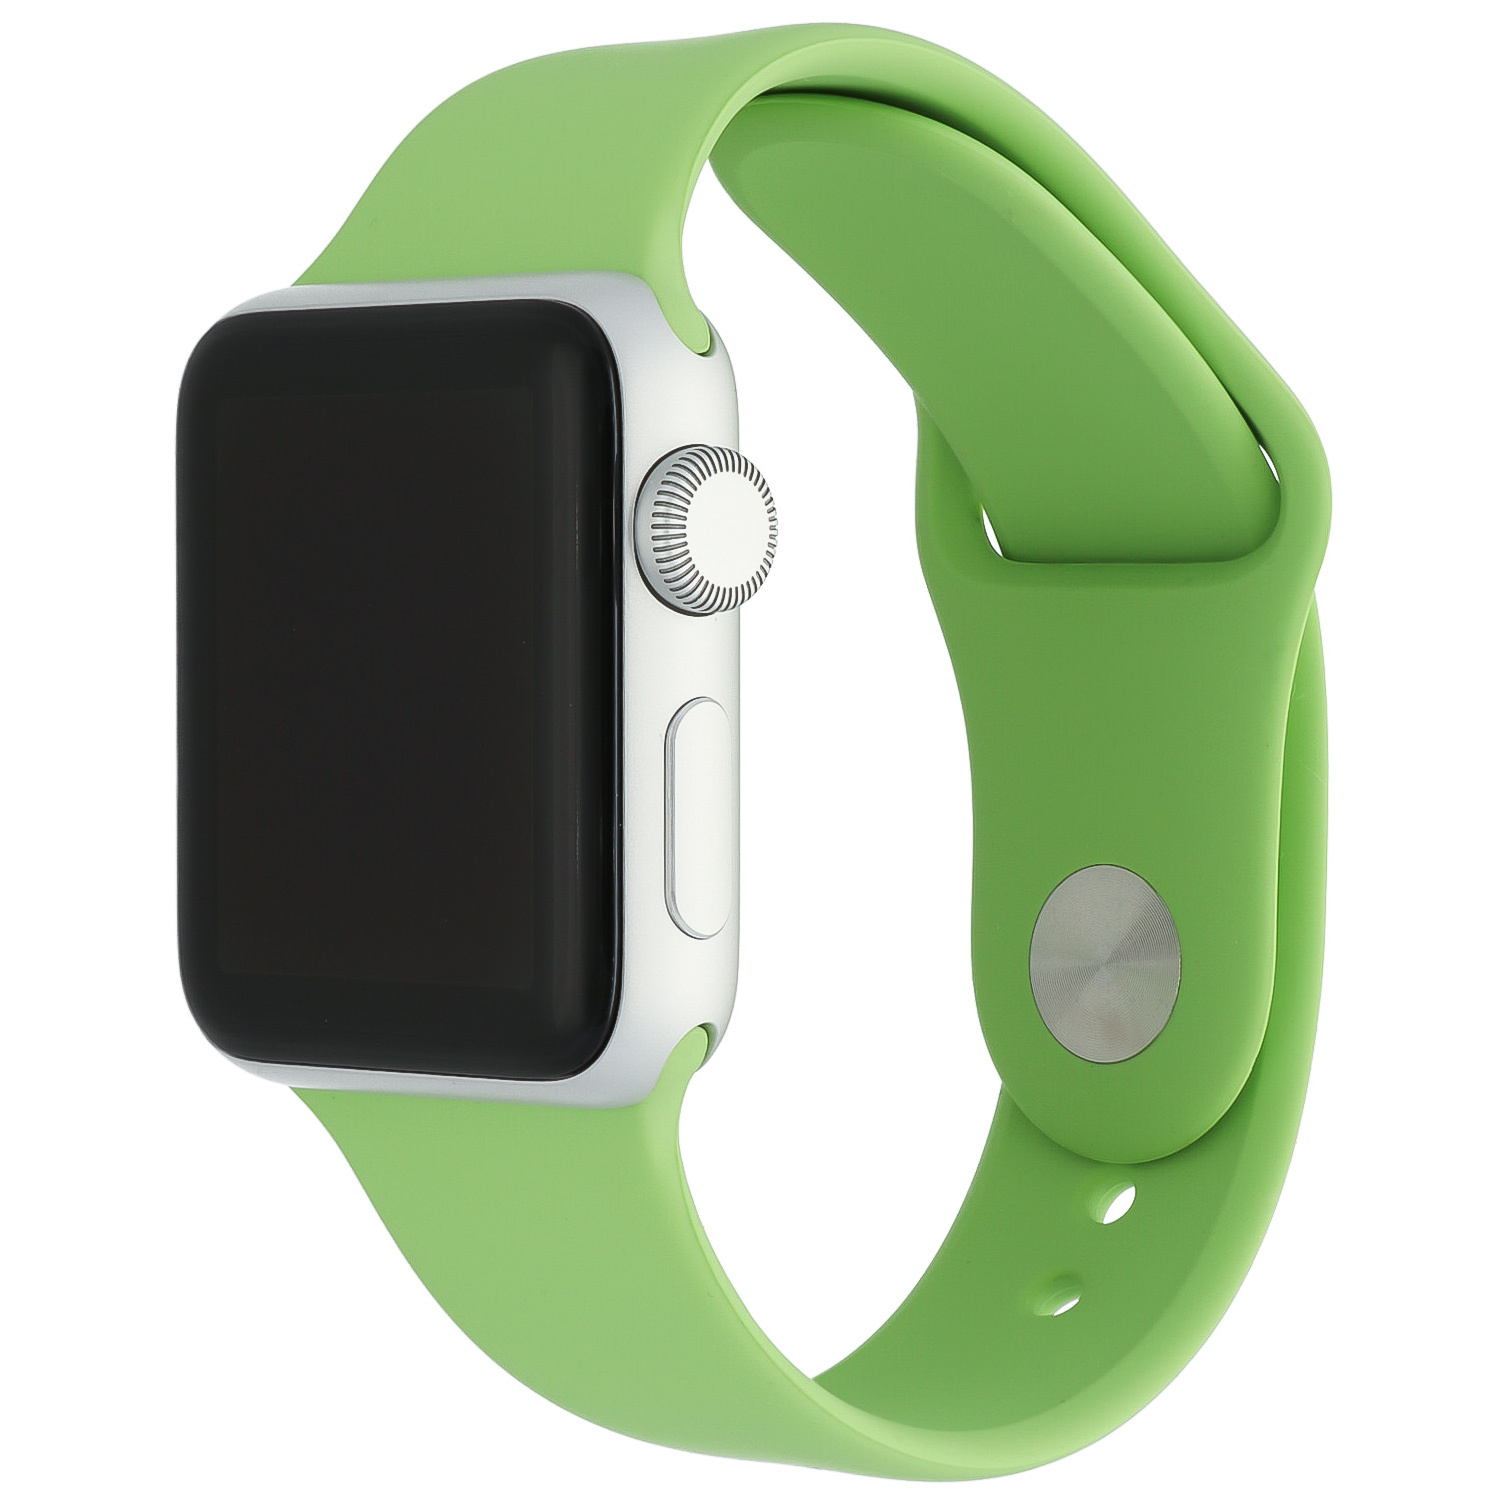  Apple Watch sport szalag - zöld menta